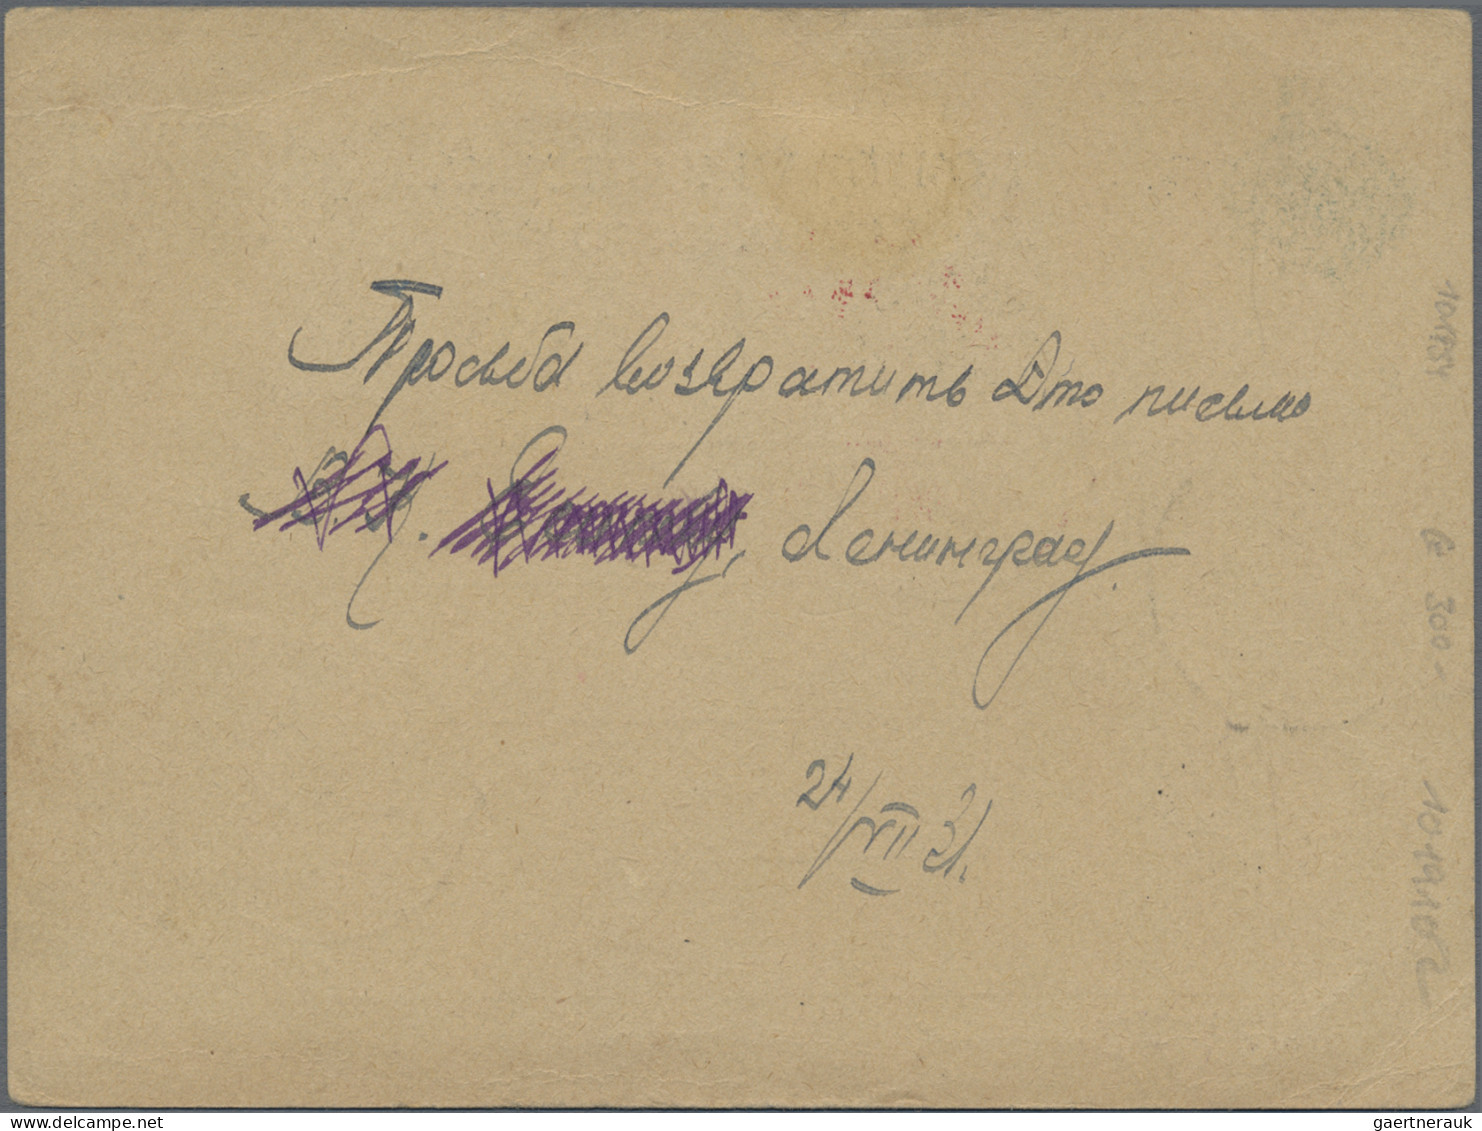 Zeppelin Mail - Germany: 1931, Polarfahrt, UdSSR Zuleitungspost, Russlandkarte, - Airmail & Zeppelin